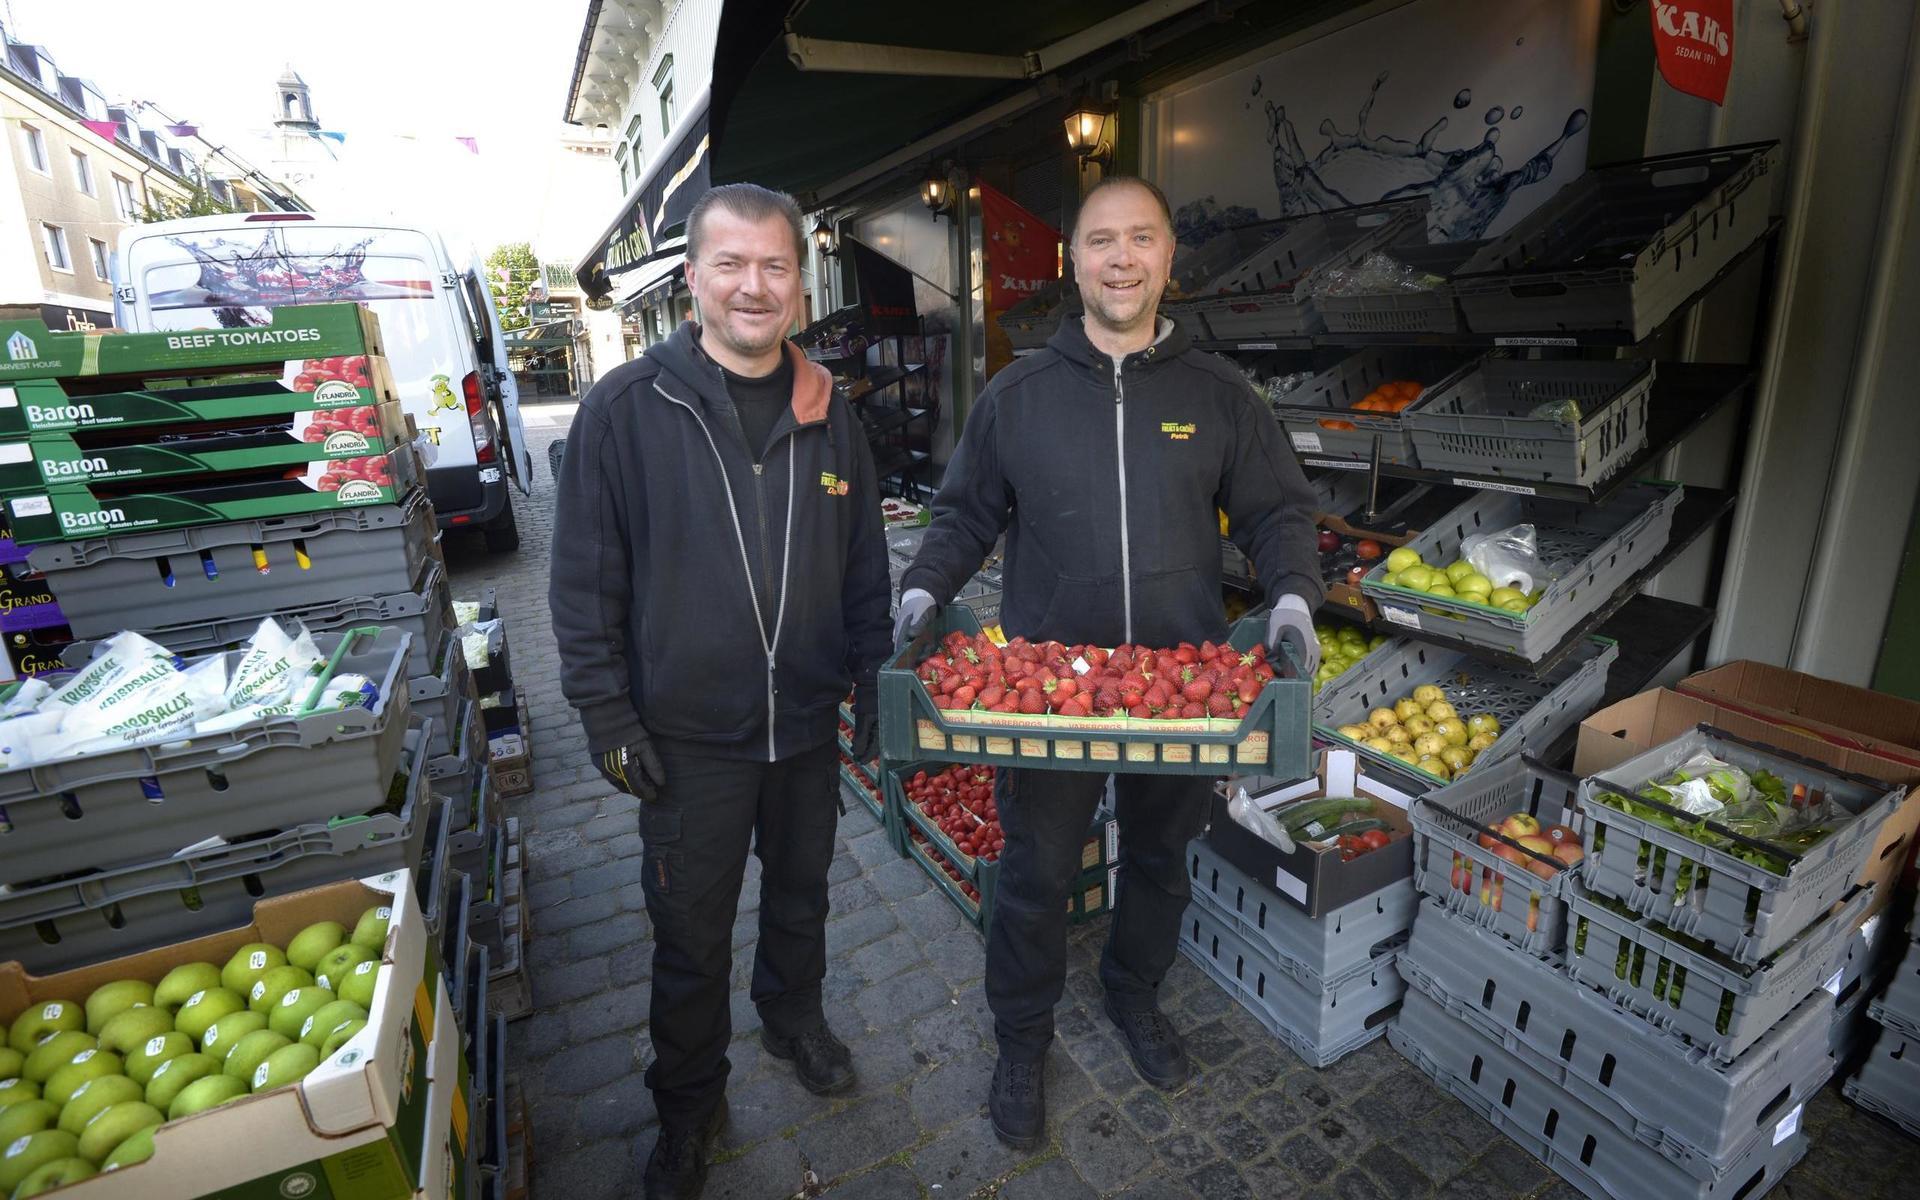 De forna torgknallarna Daniel Ivarsson och Patrik Tjernberg har jobbat ihop i över 25 år. ”Vi kompletterar varandra”, säger Daniel.